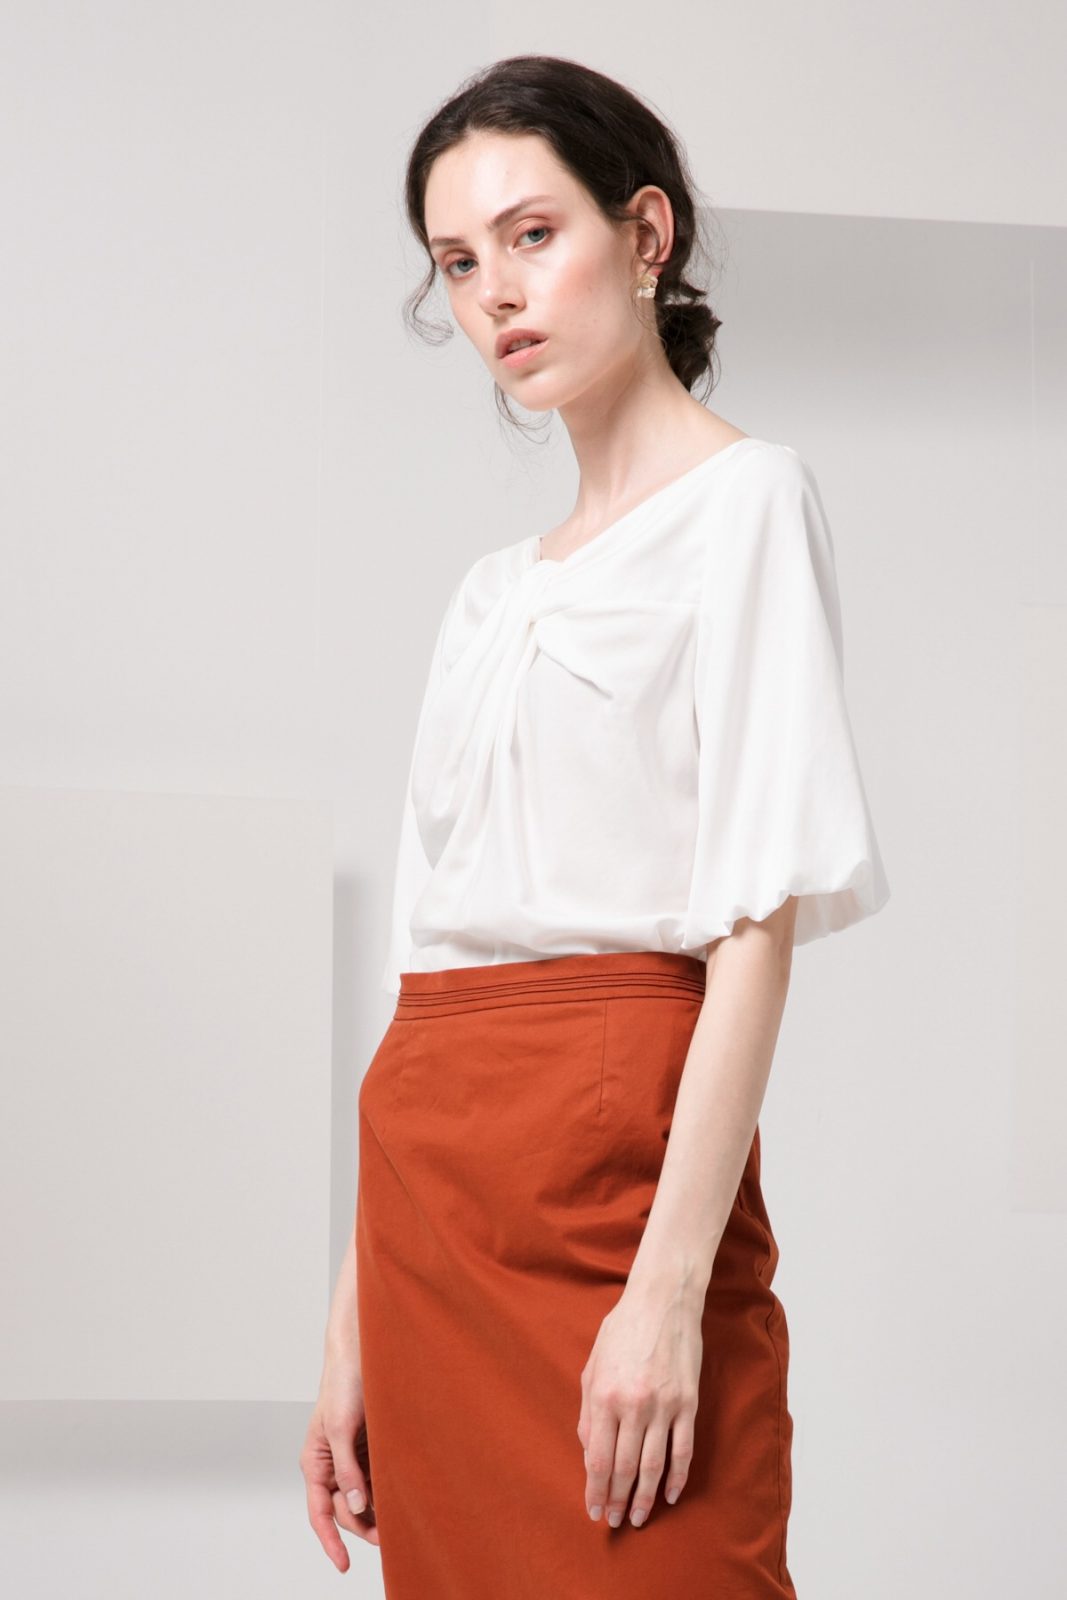 SKYE minimalist women clothing fashion Kai Knot Top white 2